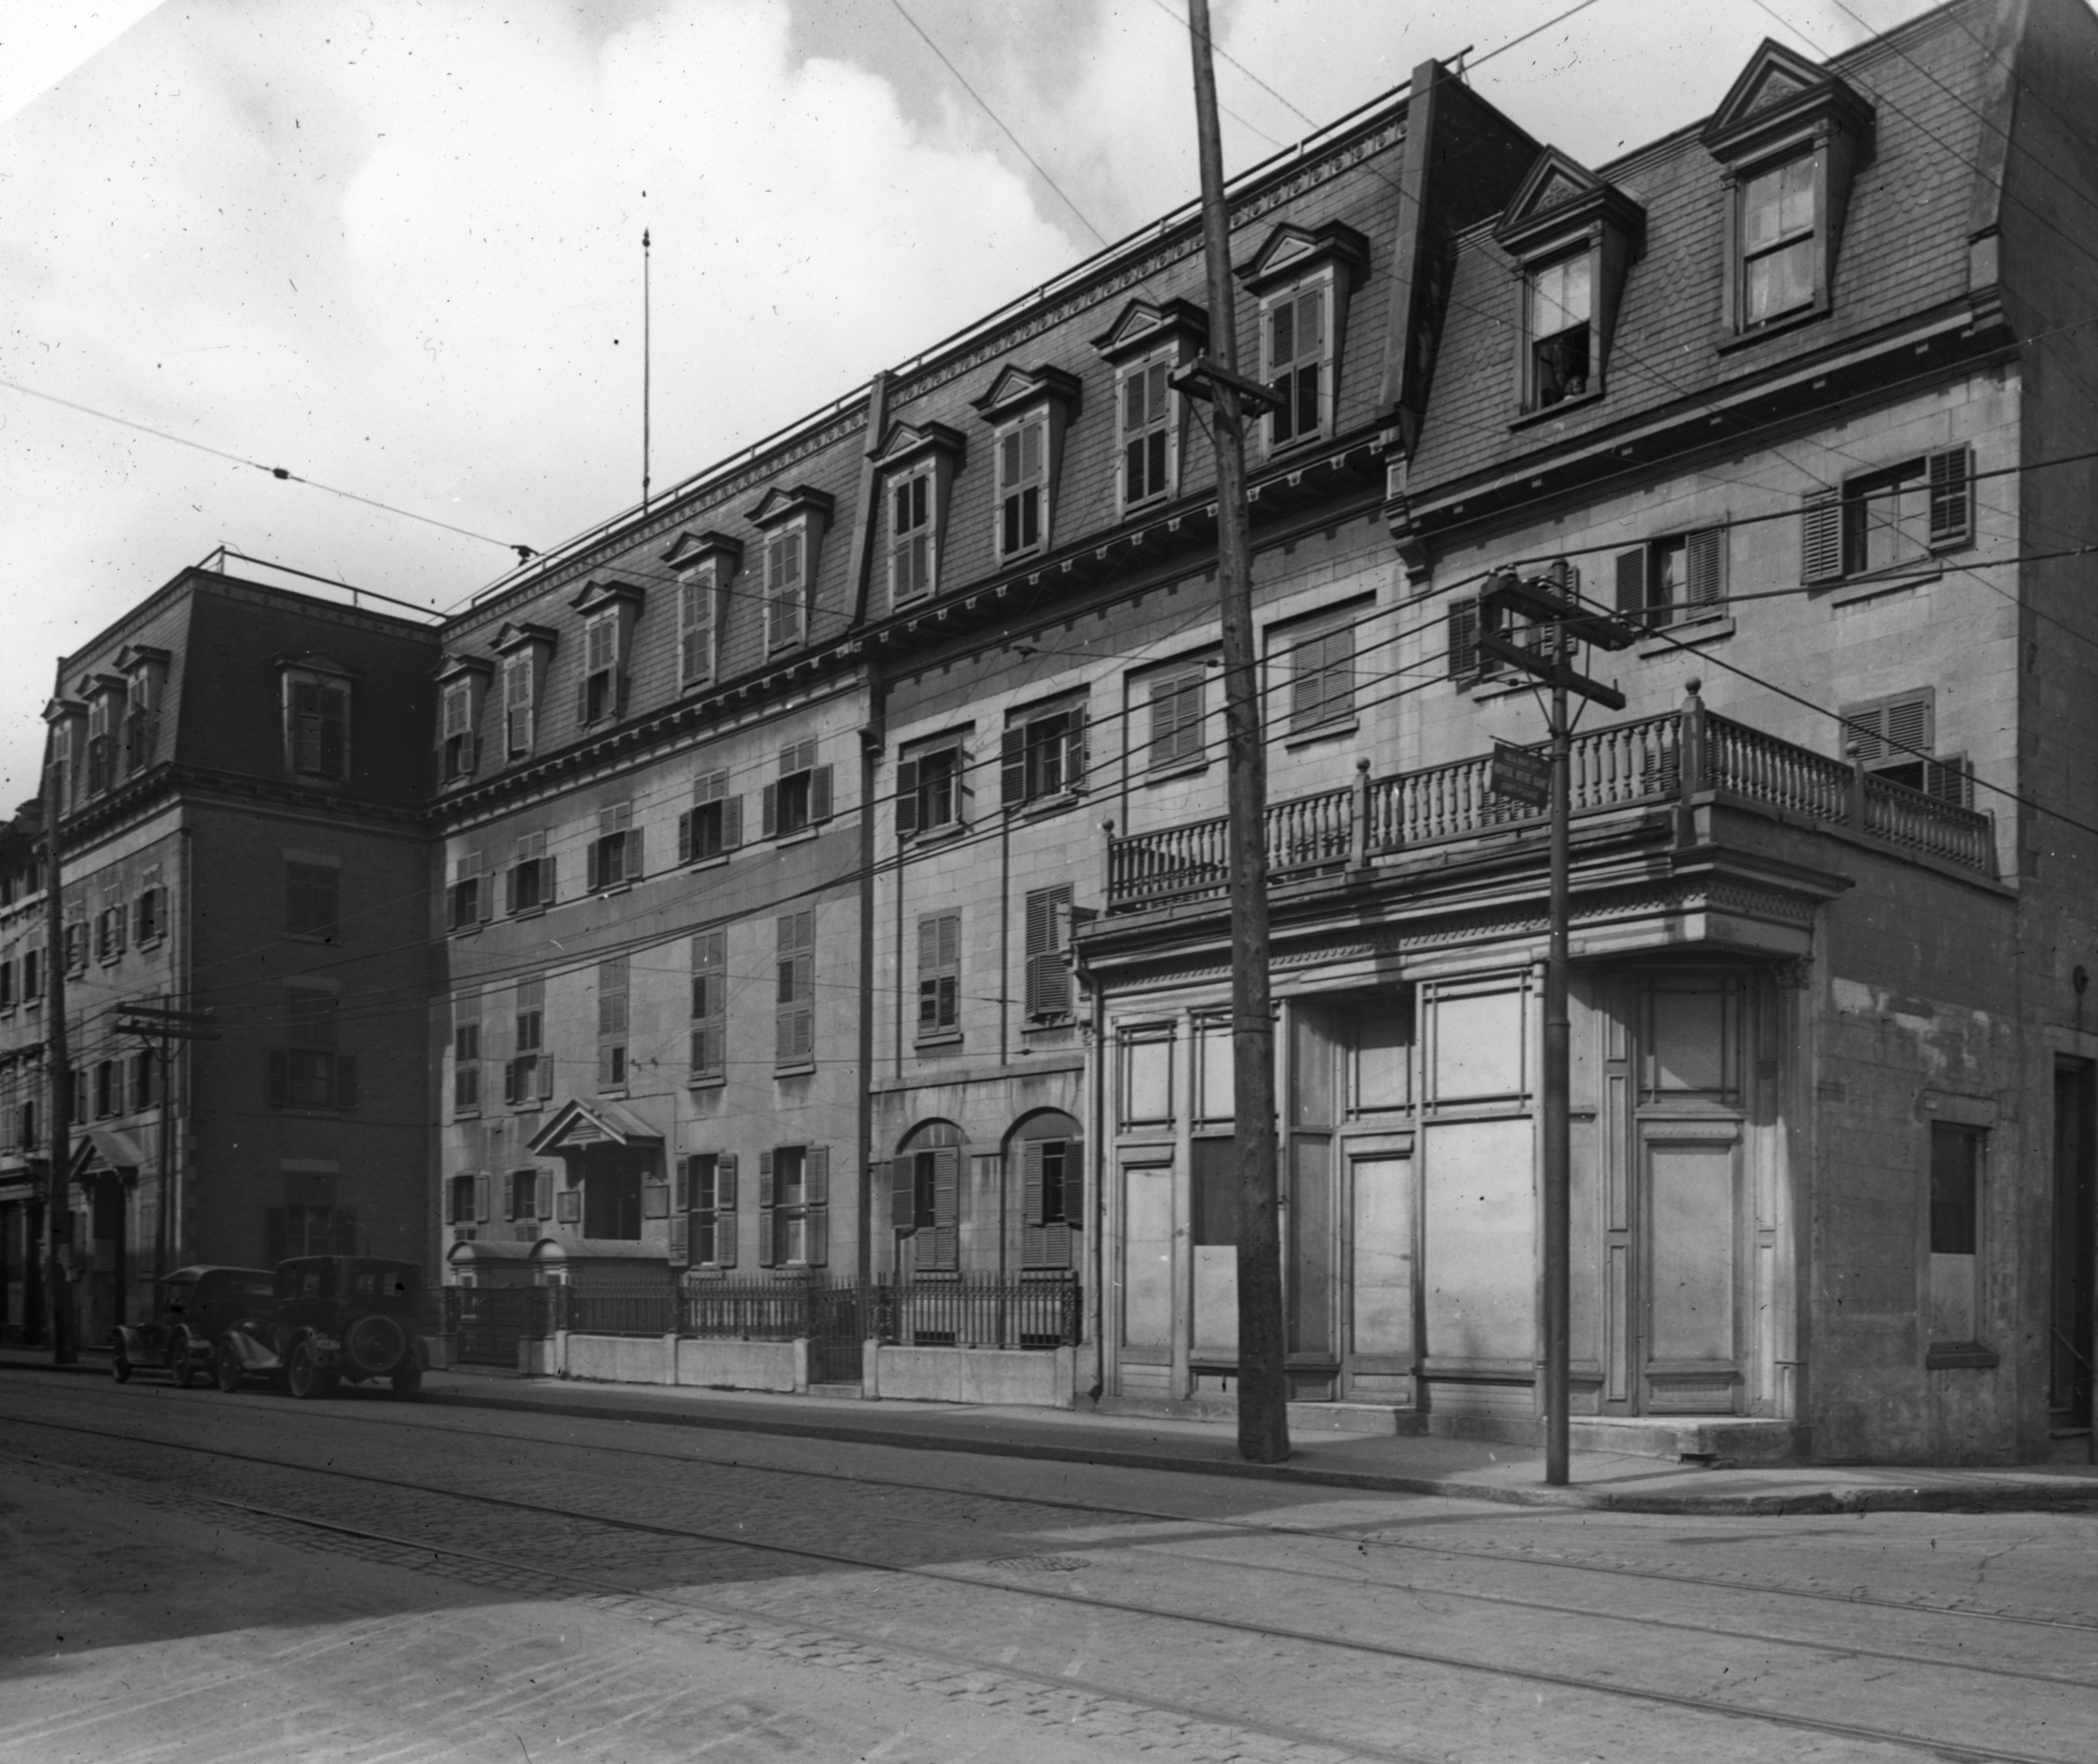 Photographie de la façade de l'hôpital Notre-Dame lorsqu'il était situé sur la rue Notre-Dame. On y remarque des poteaux électriques, les câbles servant à la circulation du tramway et deux voitures arrêtées devant l'hôpital.